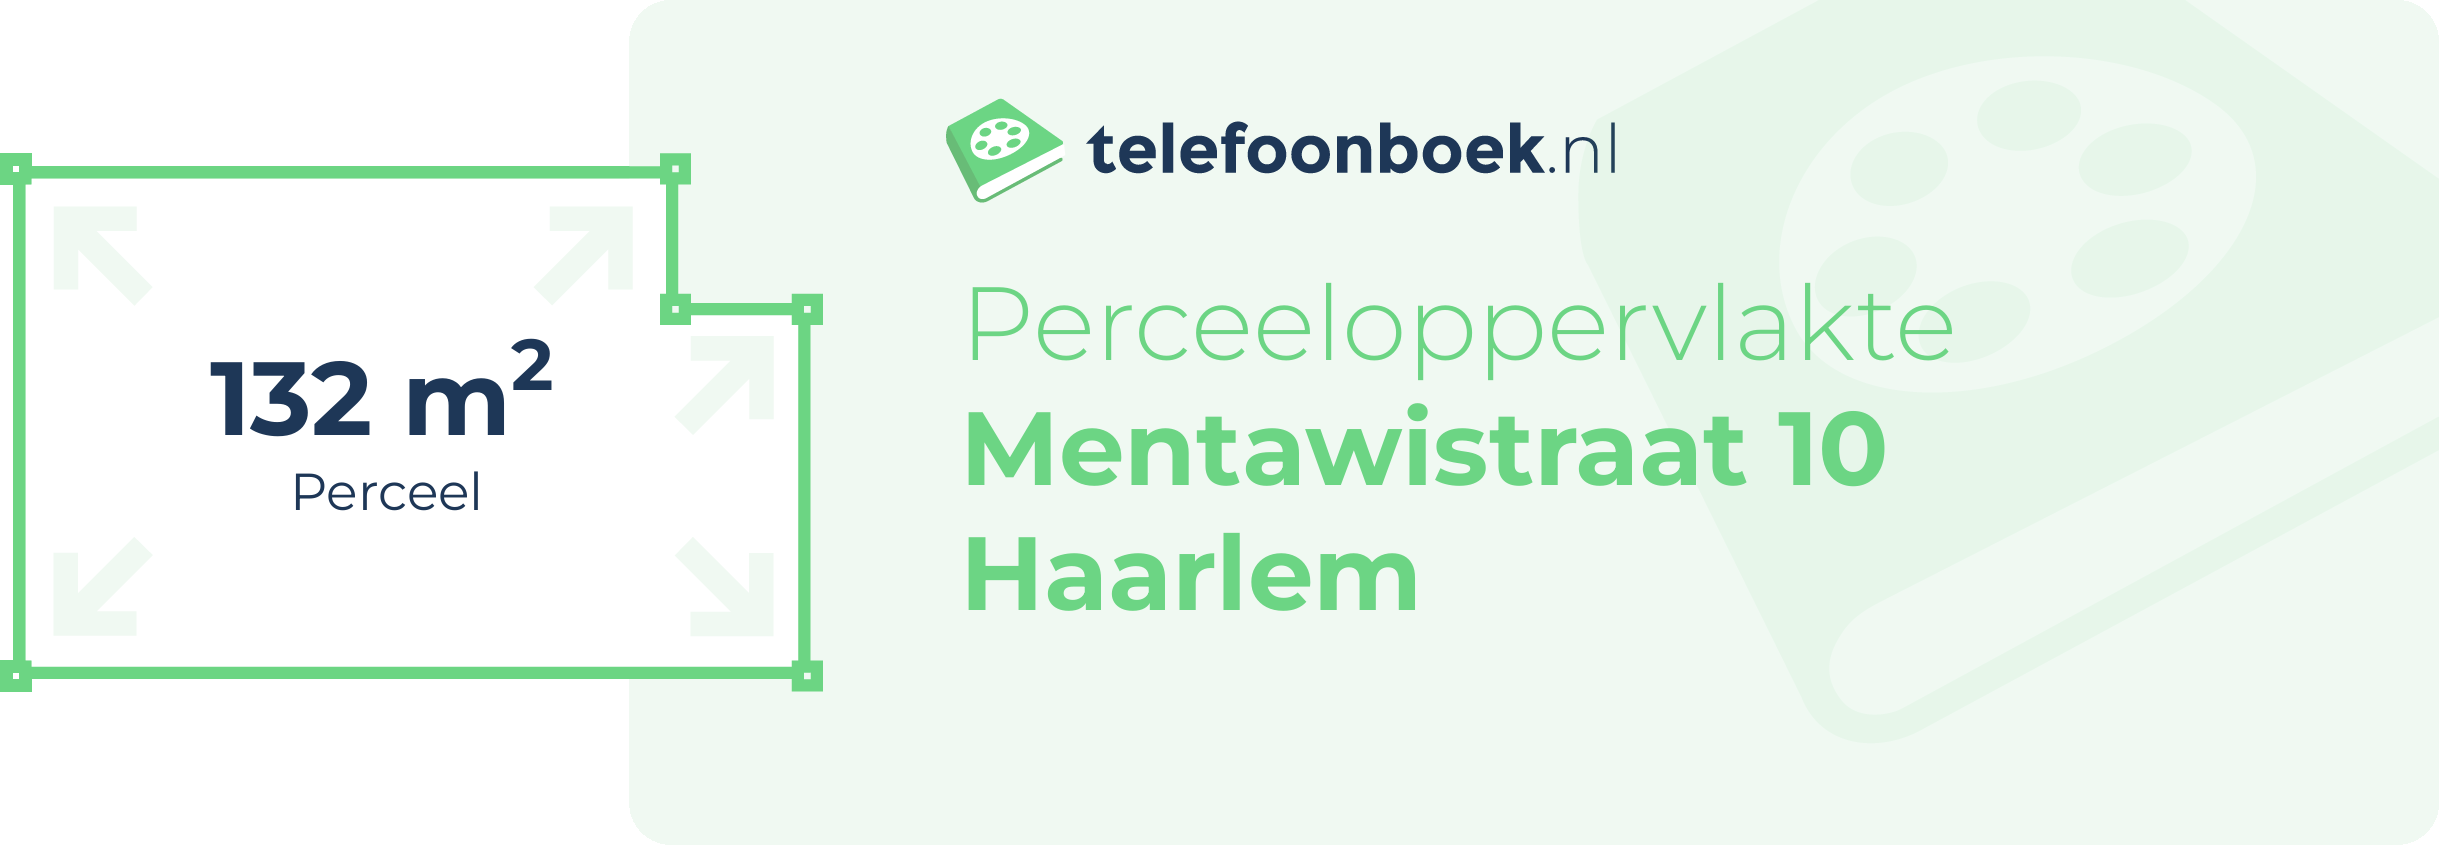 Perceeloppervlakte Mentawistraat 10 Haarlem